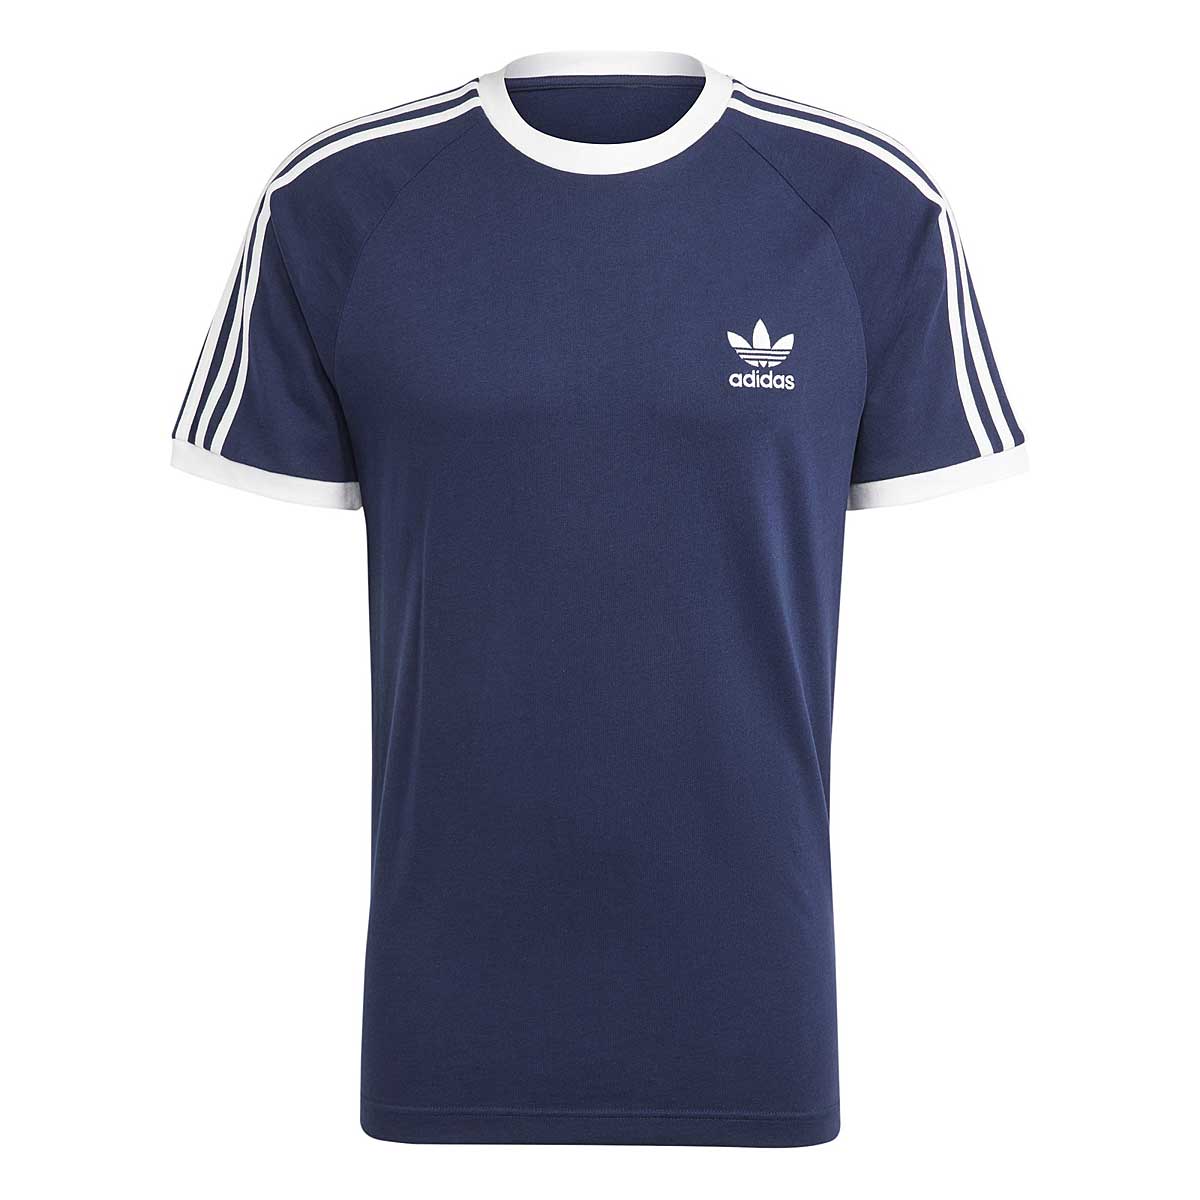 Image of Adidas Originals Adicolor Classics 3-stripes T-shirt, Blau